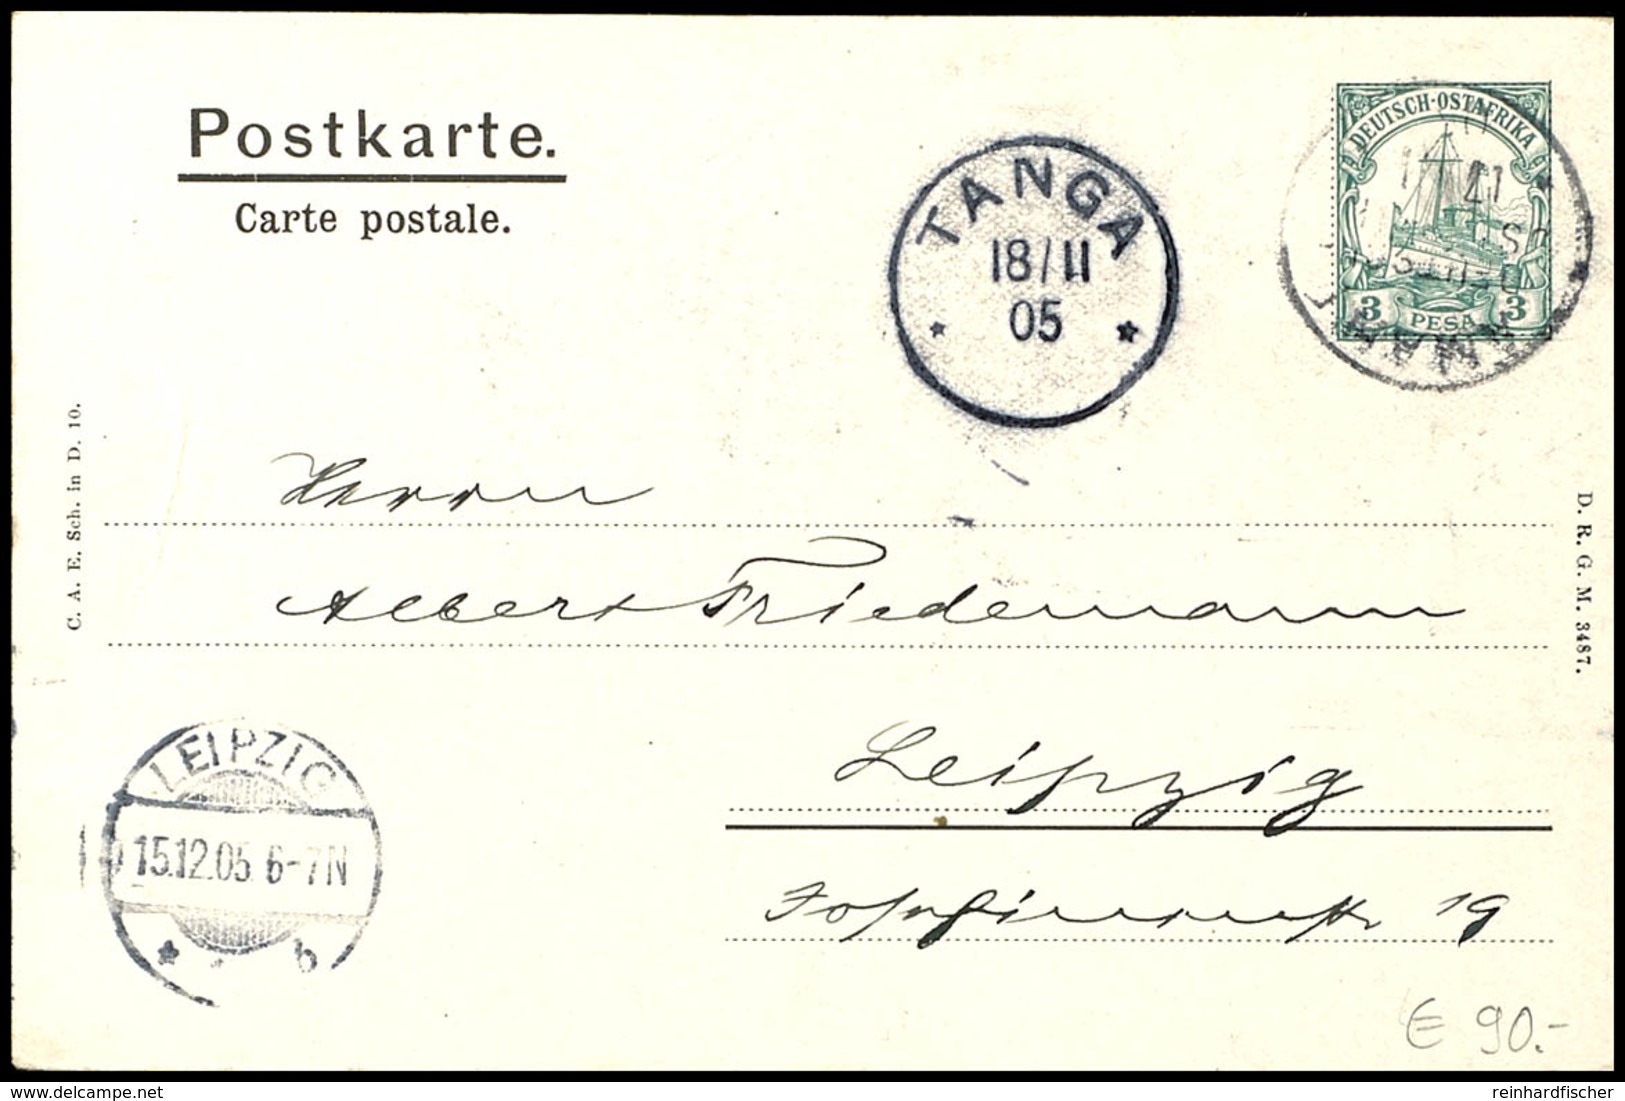 3 Pesa Schiffszeichnung, Privat-Ganzsachenkarte Von "AMANI 17/II 05" An Albert Friedemann, Leipzig Mit Ank.Stpl., Katalo - Afrique Orientale